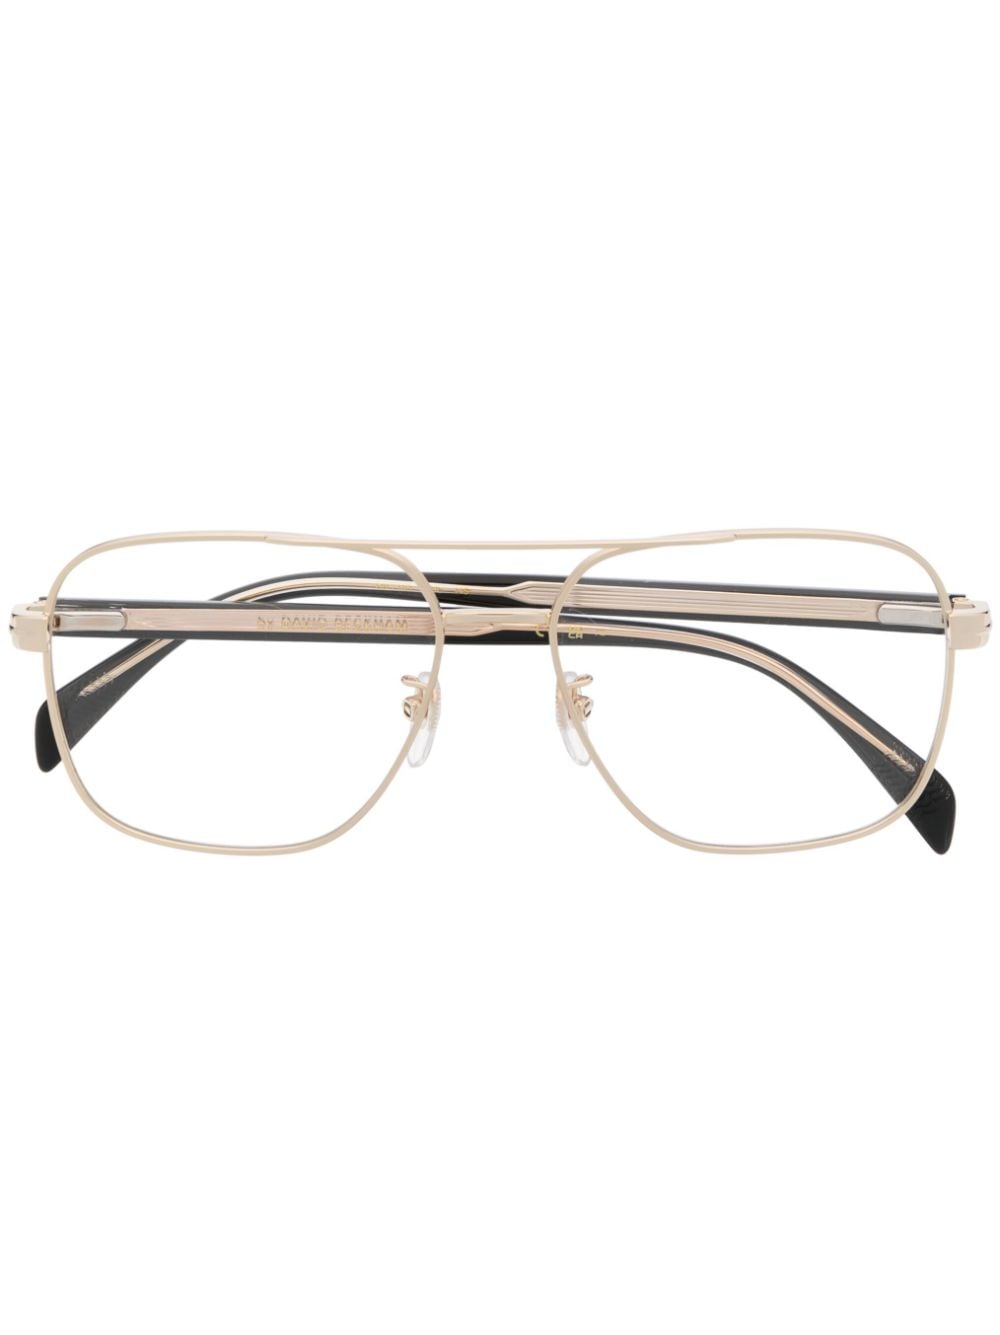 Eyewear by David Beckham pilot-frame glasses - Gold von Eyewear by David Beckham